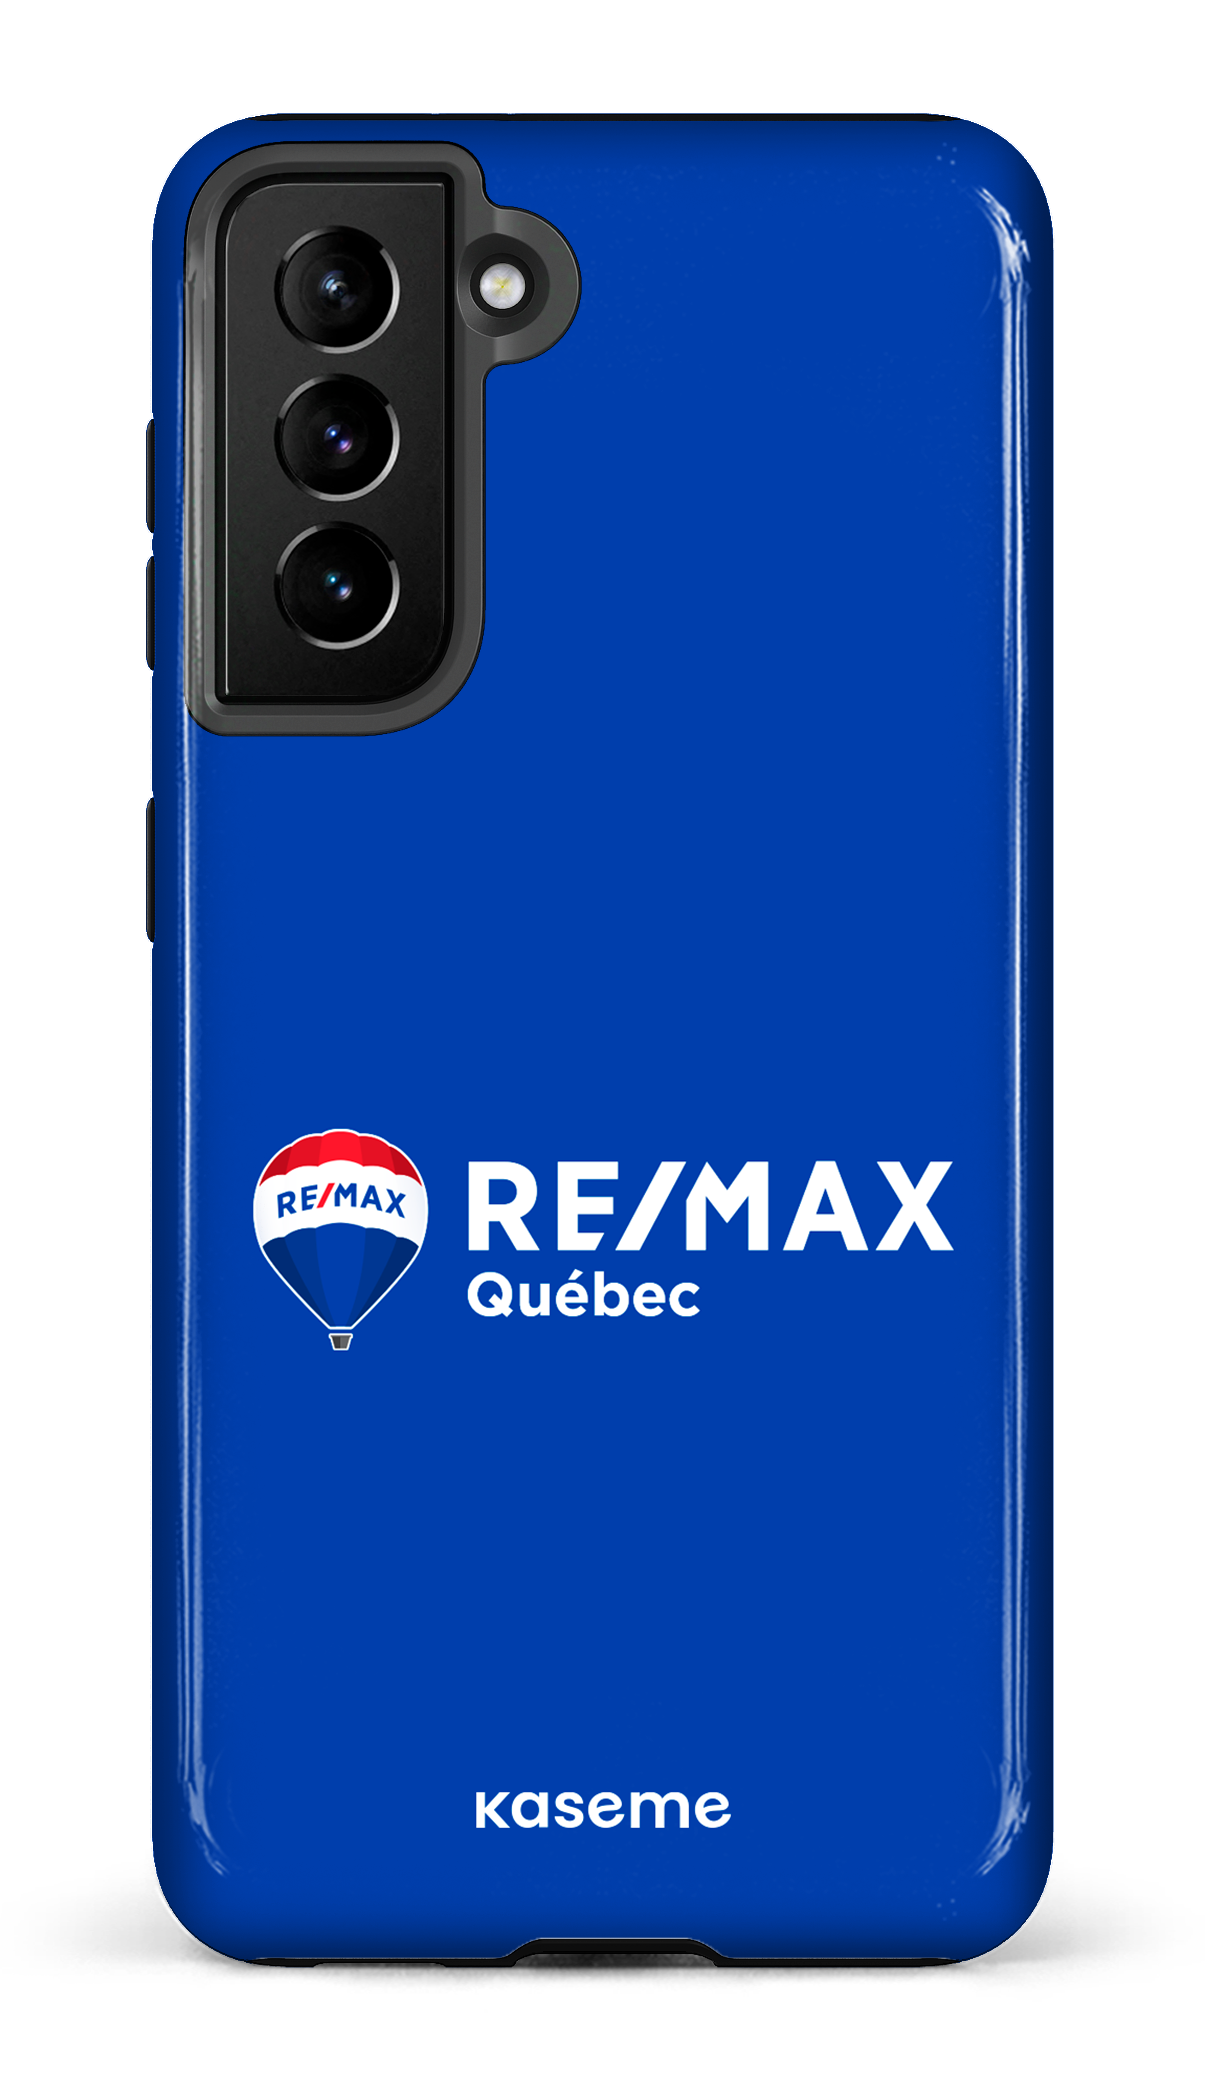 Remax Québec Bleu - Galaxy S21